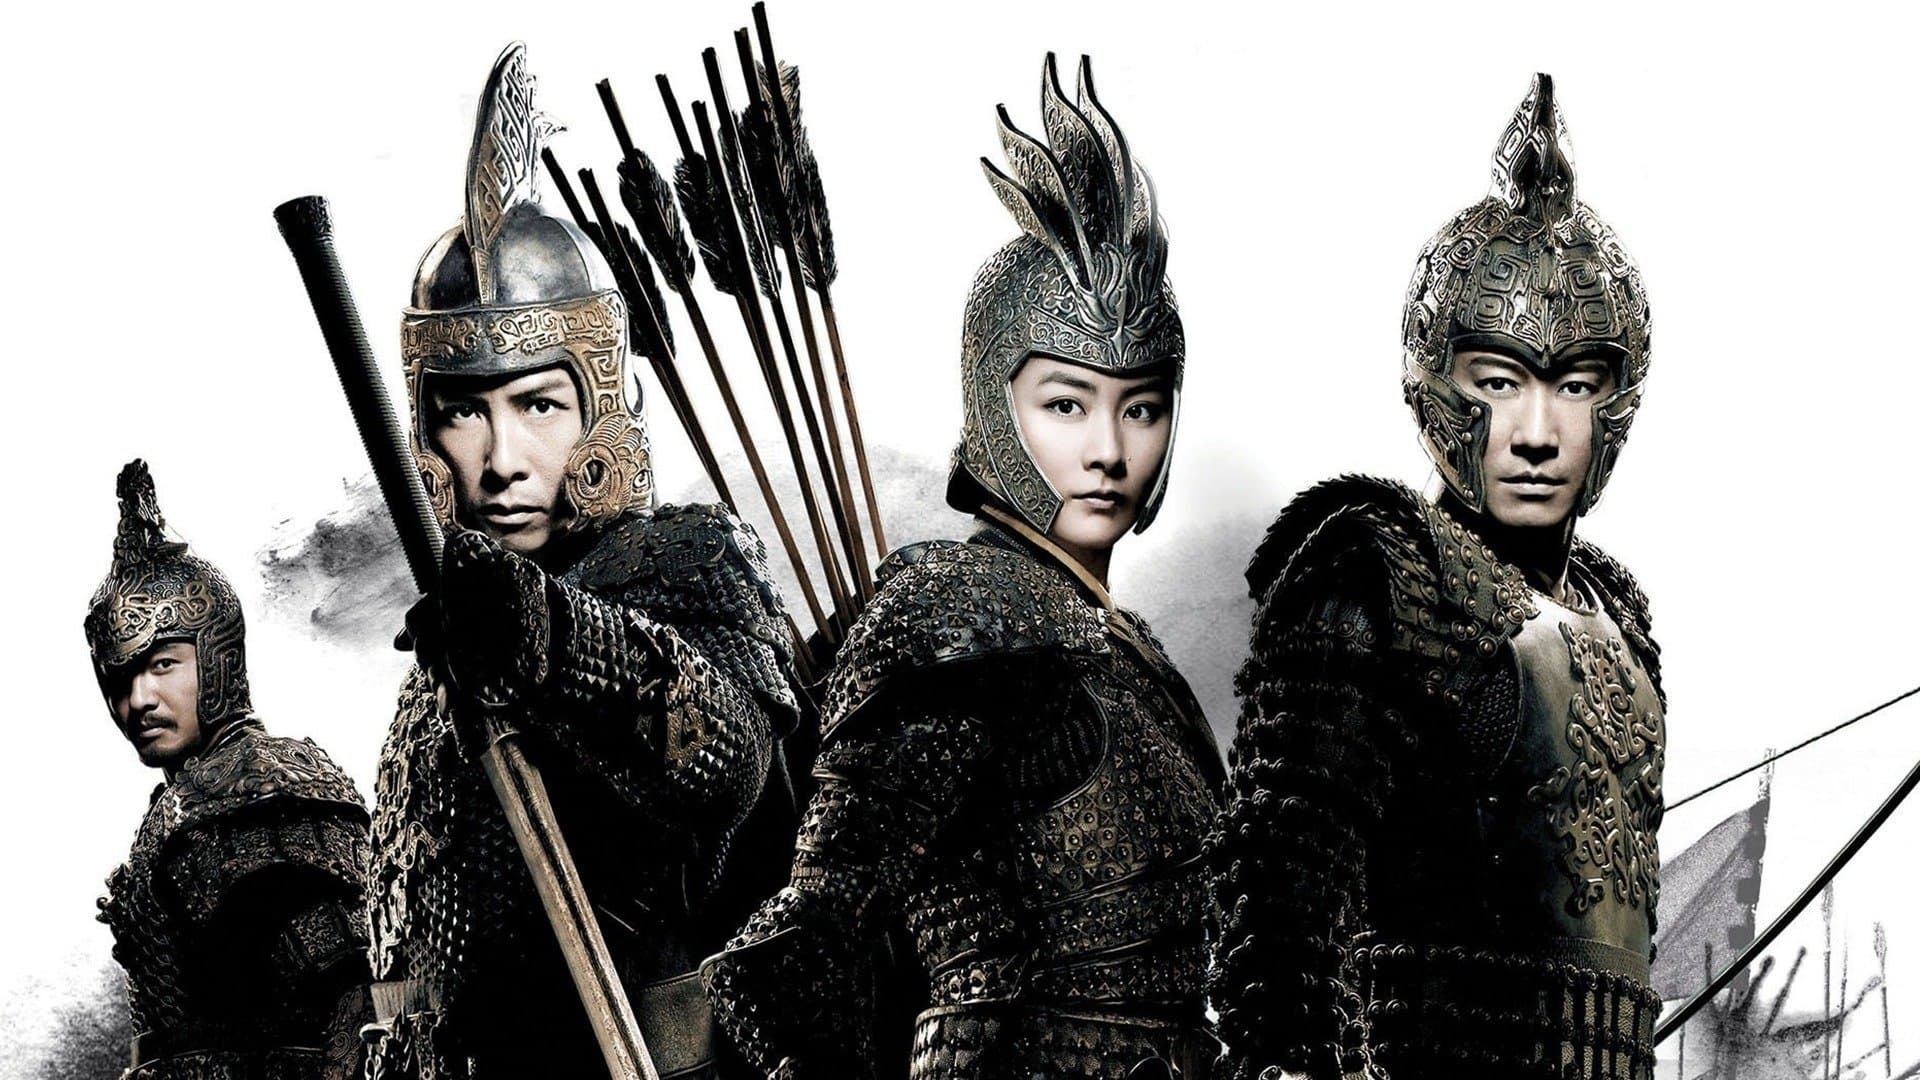 იმპერატორი და მეომრები / Jiang shan mei ren (An Empress and the Warriors)